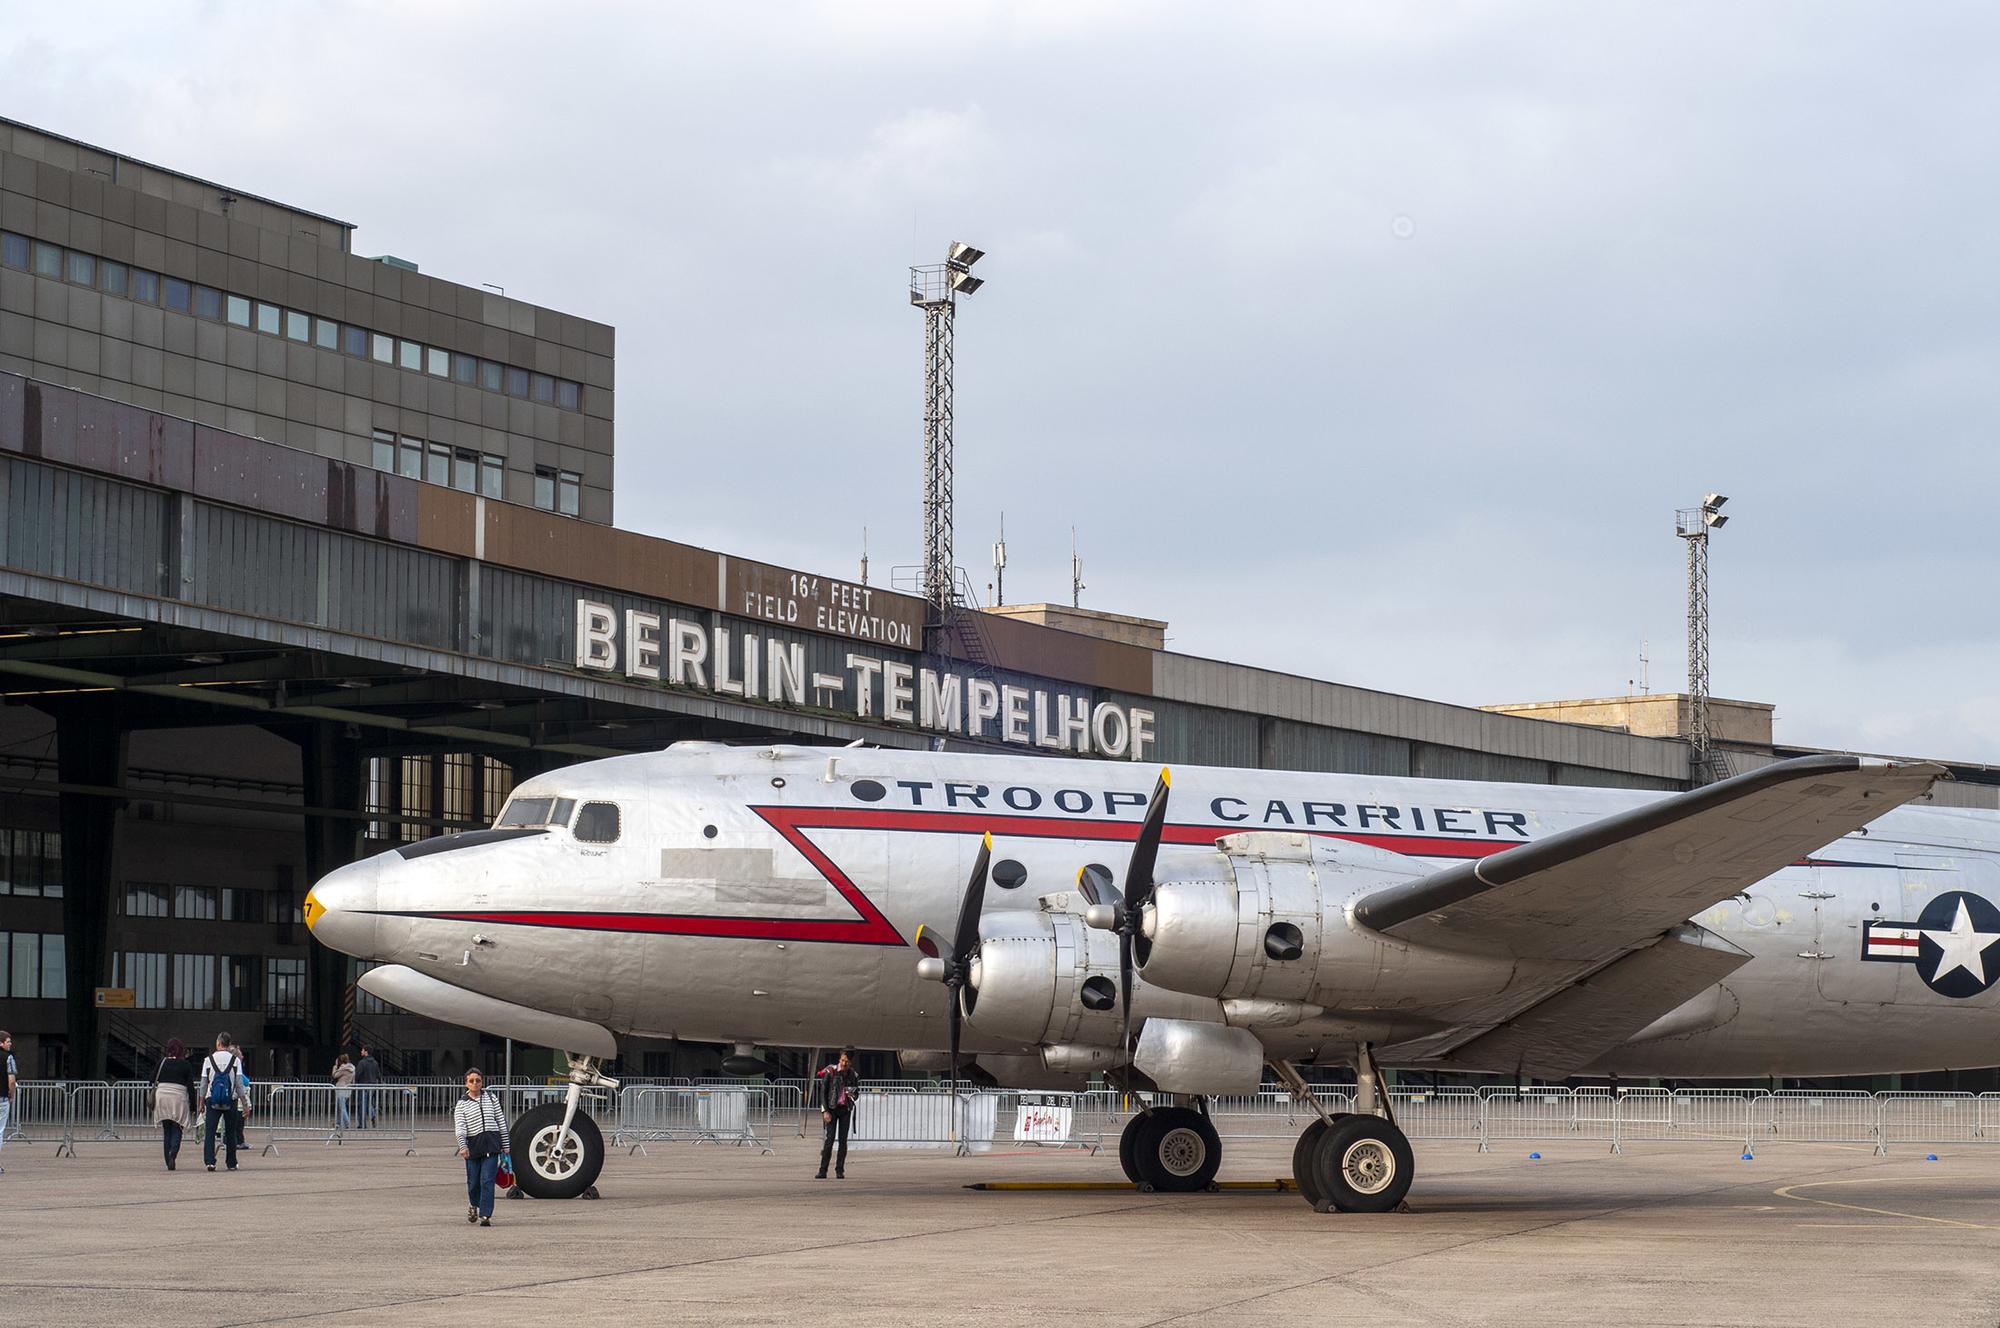 Berlín - 3 Tempelhof